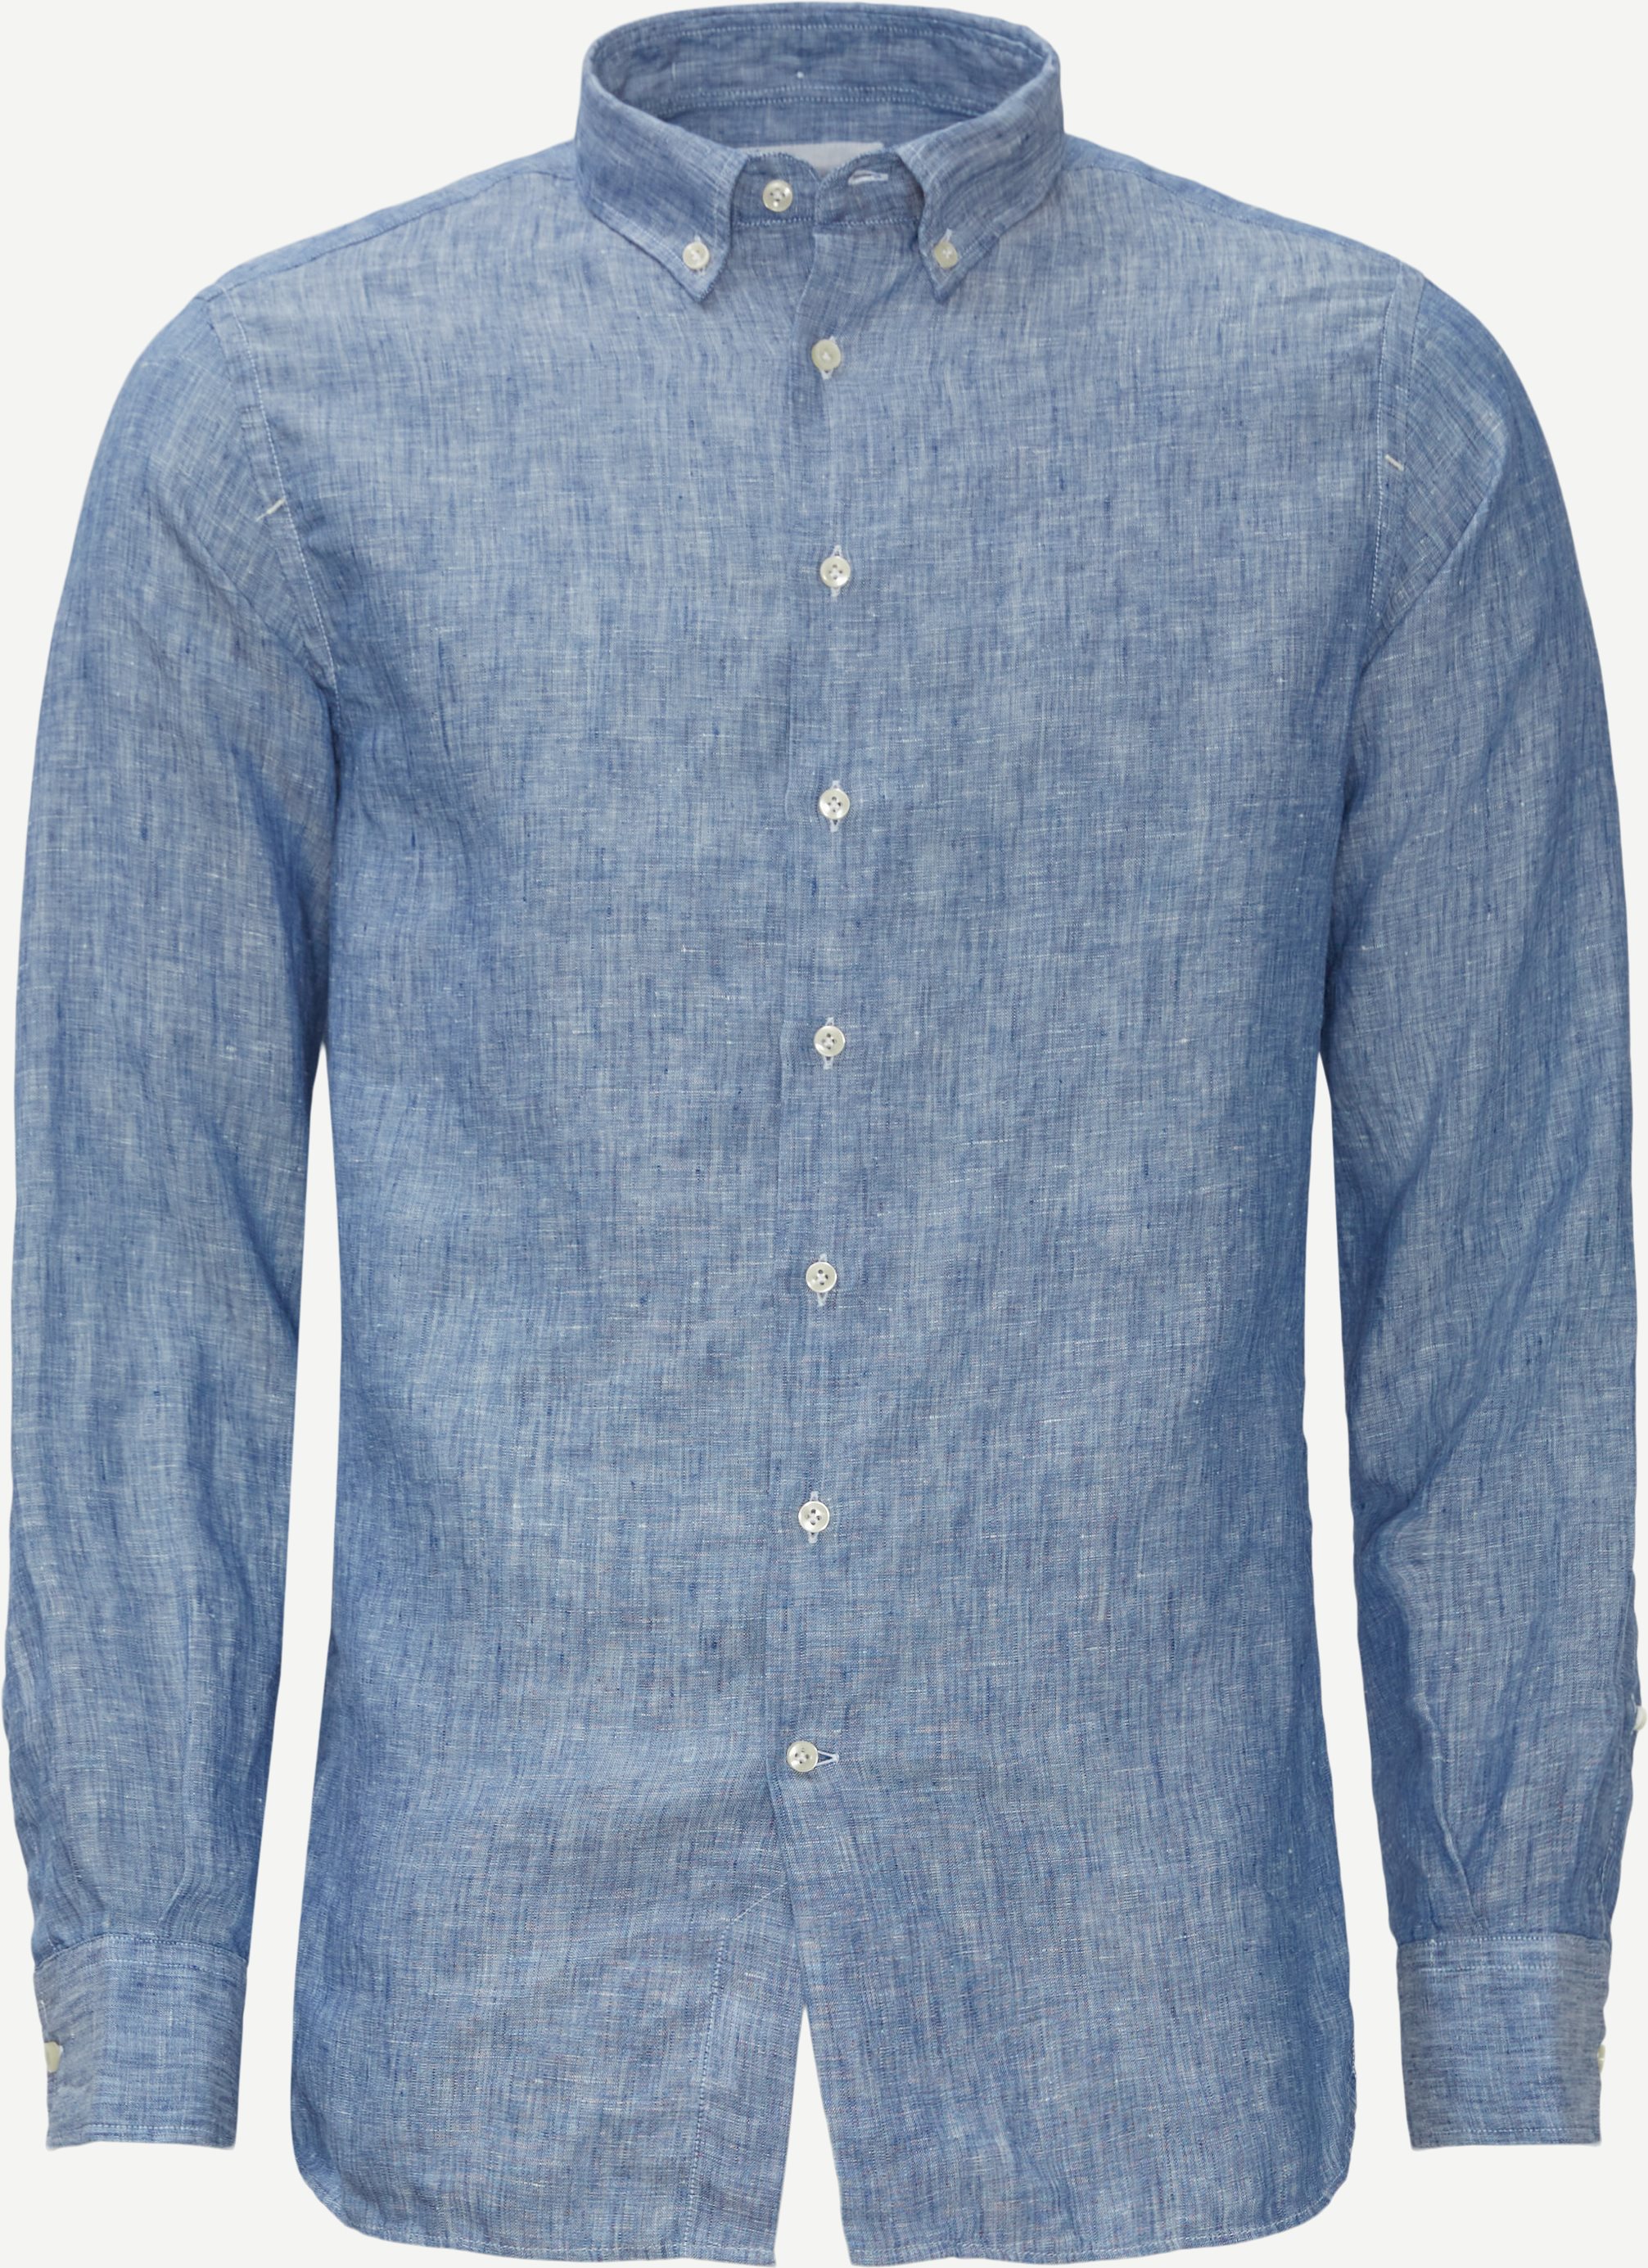 11100 Washed Linen Shirt - Skjorter - Regular fit - Blå